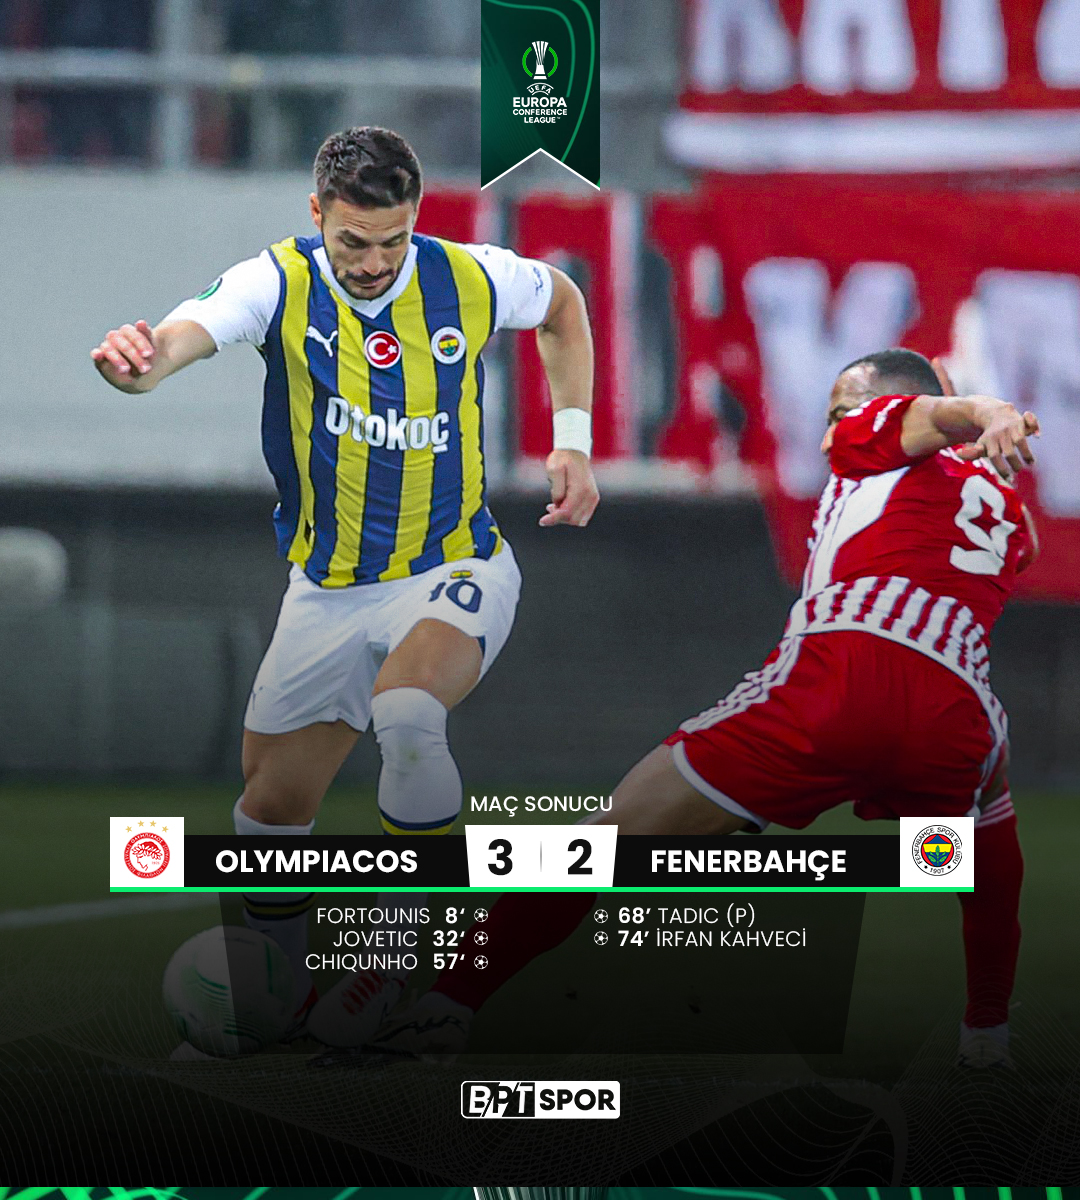 Temsilcimiz Fenerbahçe, 3-0 geriye düştüğü maçta skoru 3-2'ye getirmesine rağmen mağlup oldu. Yarı final biletinin sahibi Kadıköy'de belirlenecek.